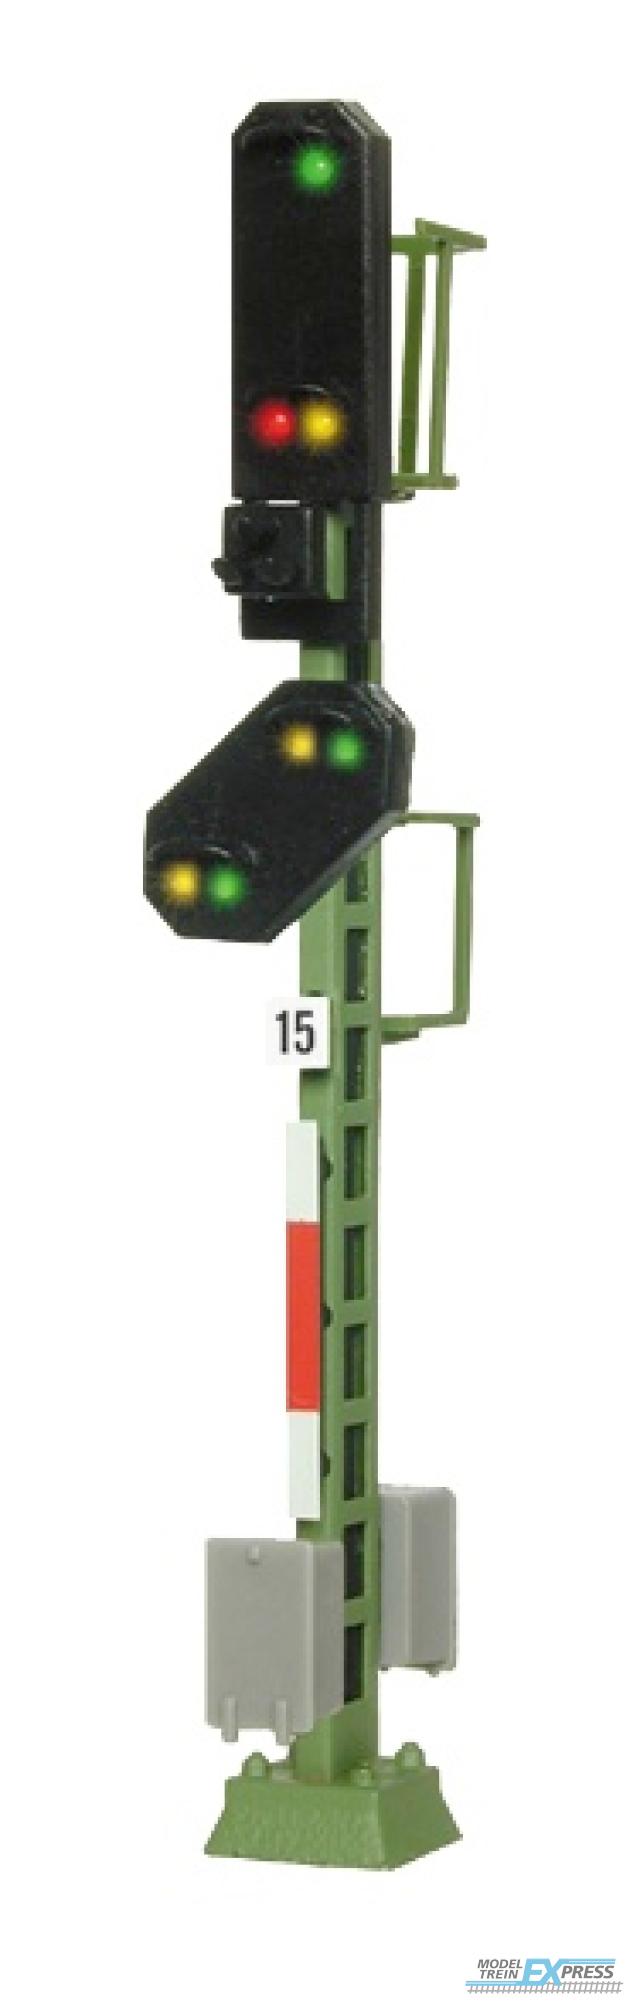 Viessmann 4415 N Licht-Einfahrsignal mit Vorsignal